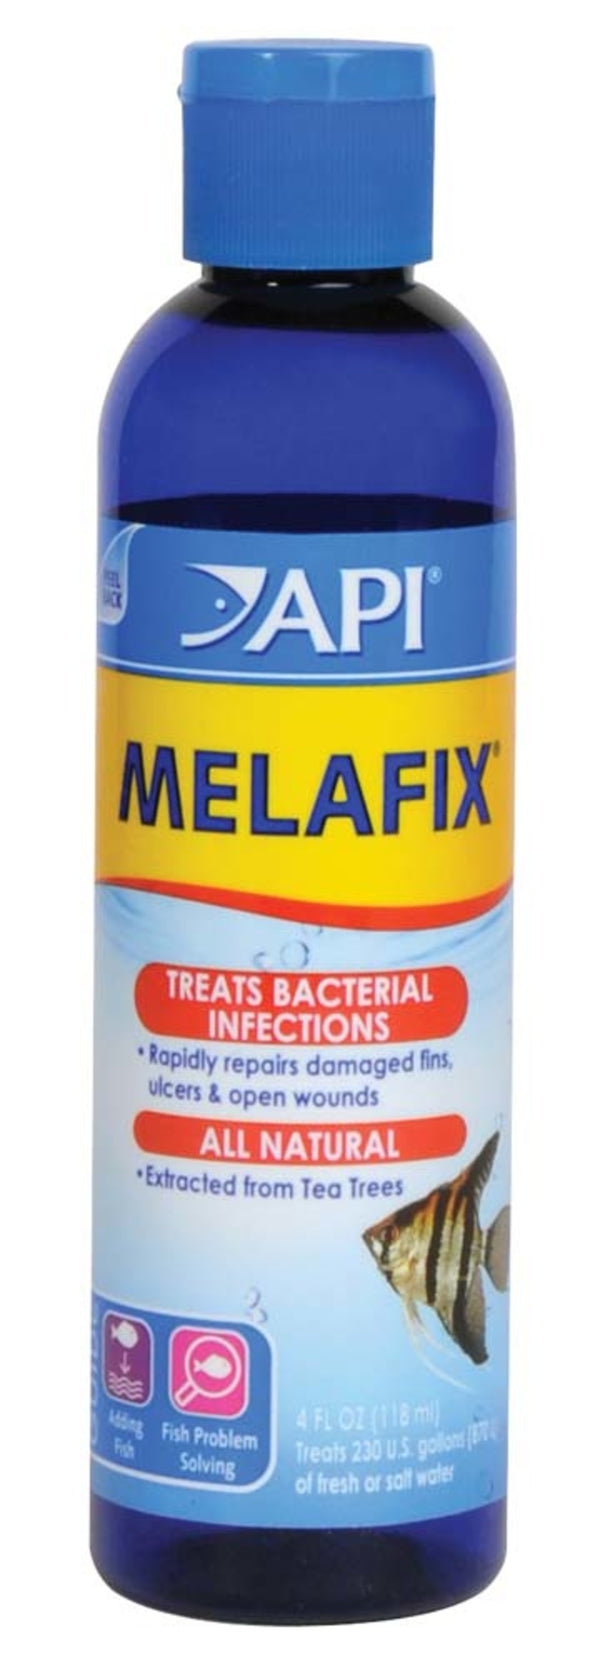 API Melafix Baterial Infection Remedy - 4oz